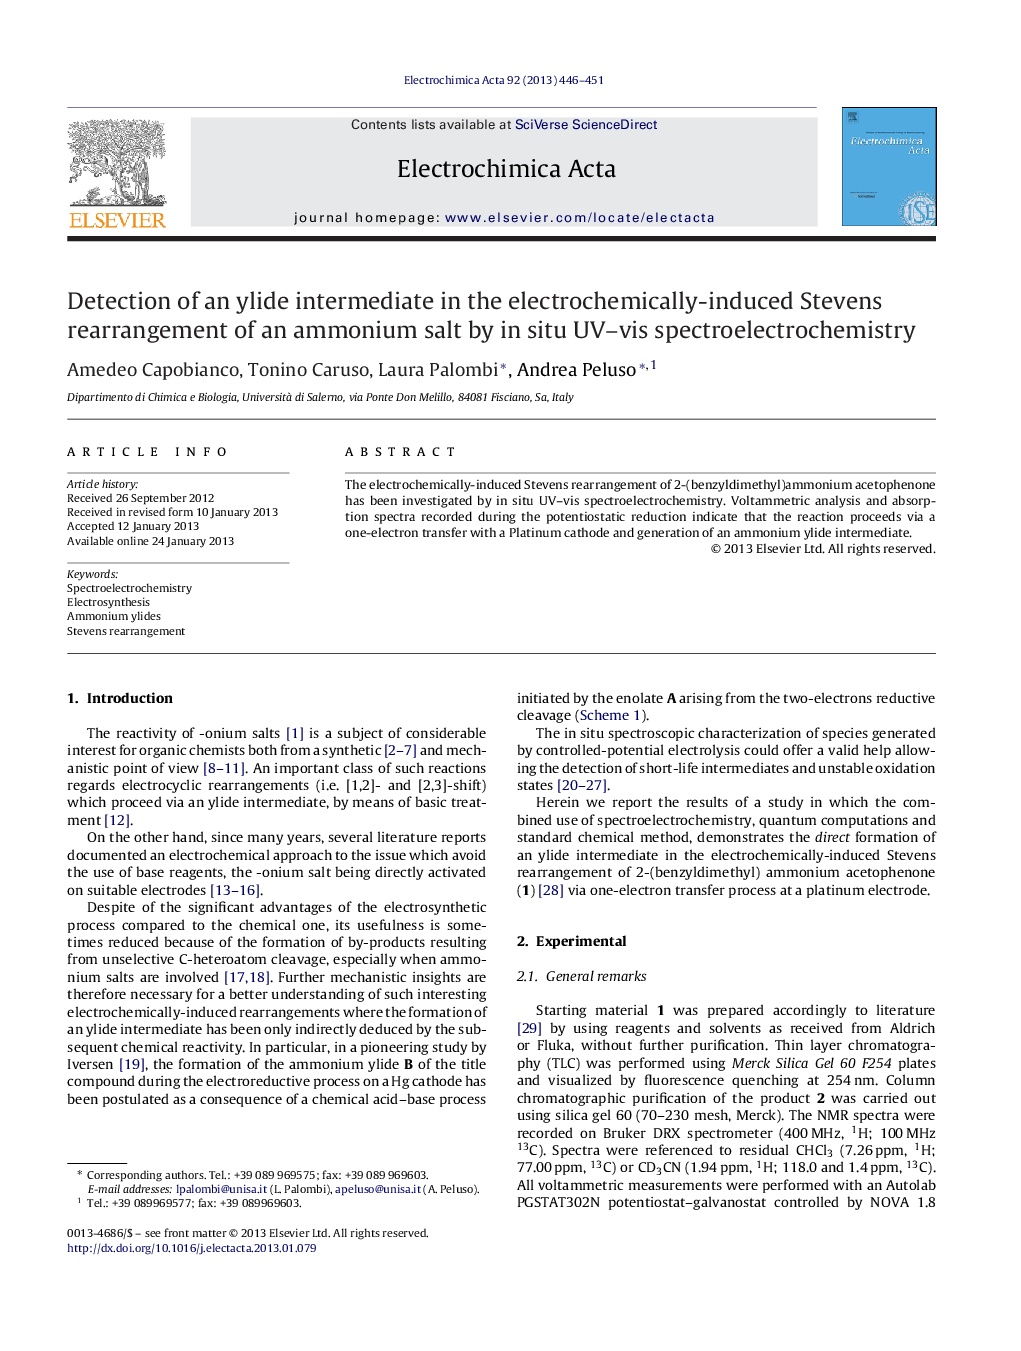 تشخیص یک واسطه ییلید در بازسازی واکنش الکتروشیمیایی استیونس از نمک آمونیوم به وسیله ی اسپکترومک شیمی 